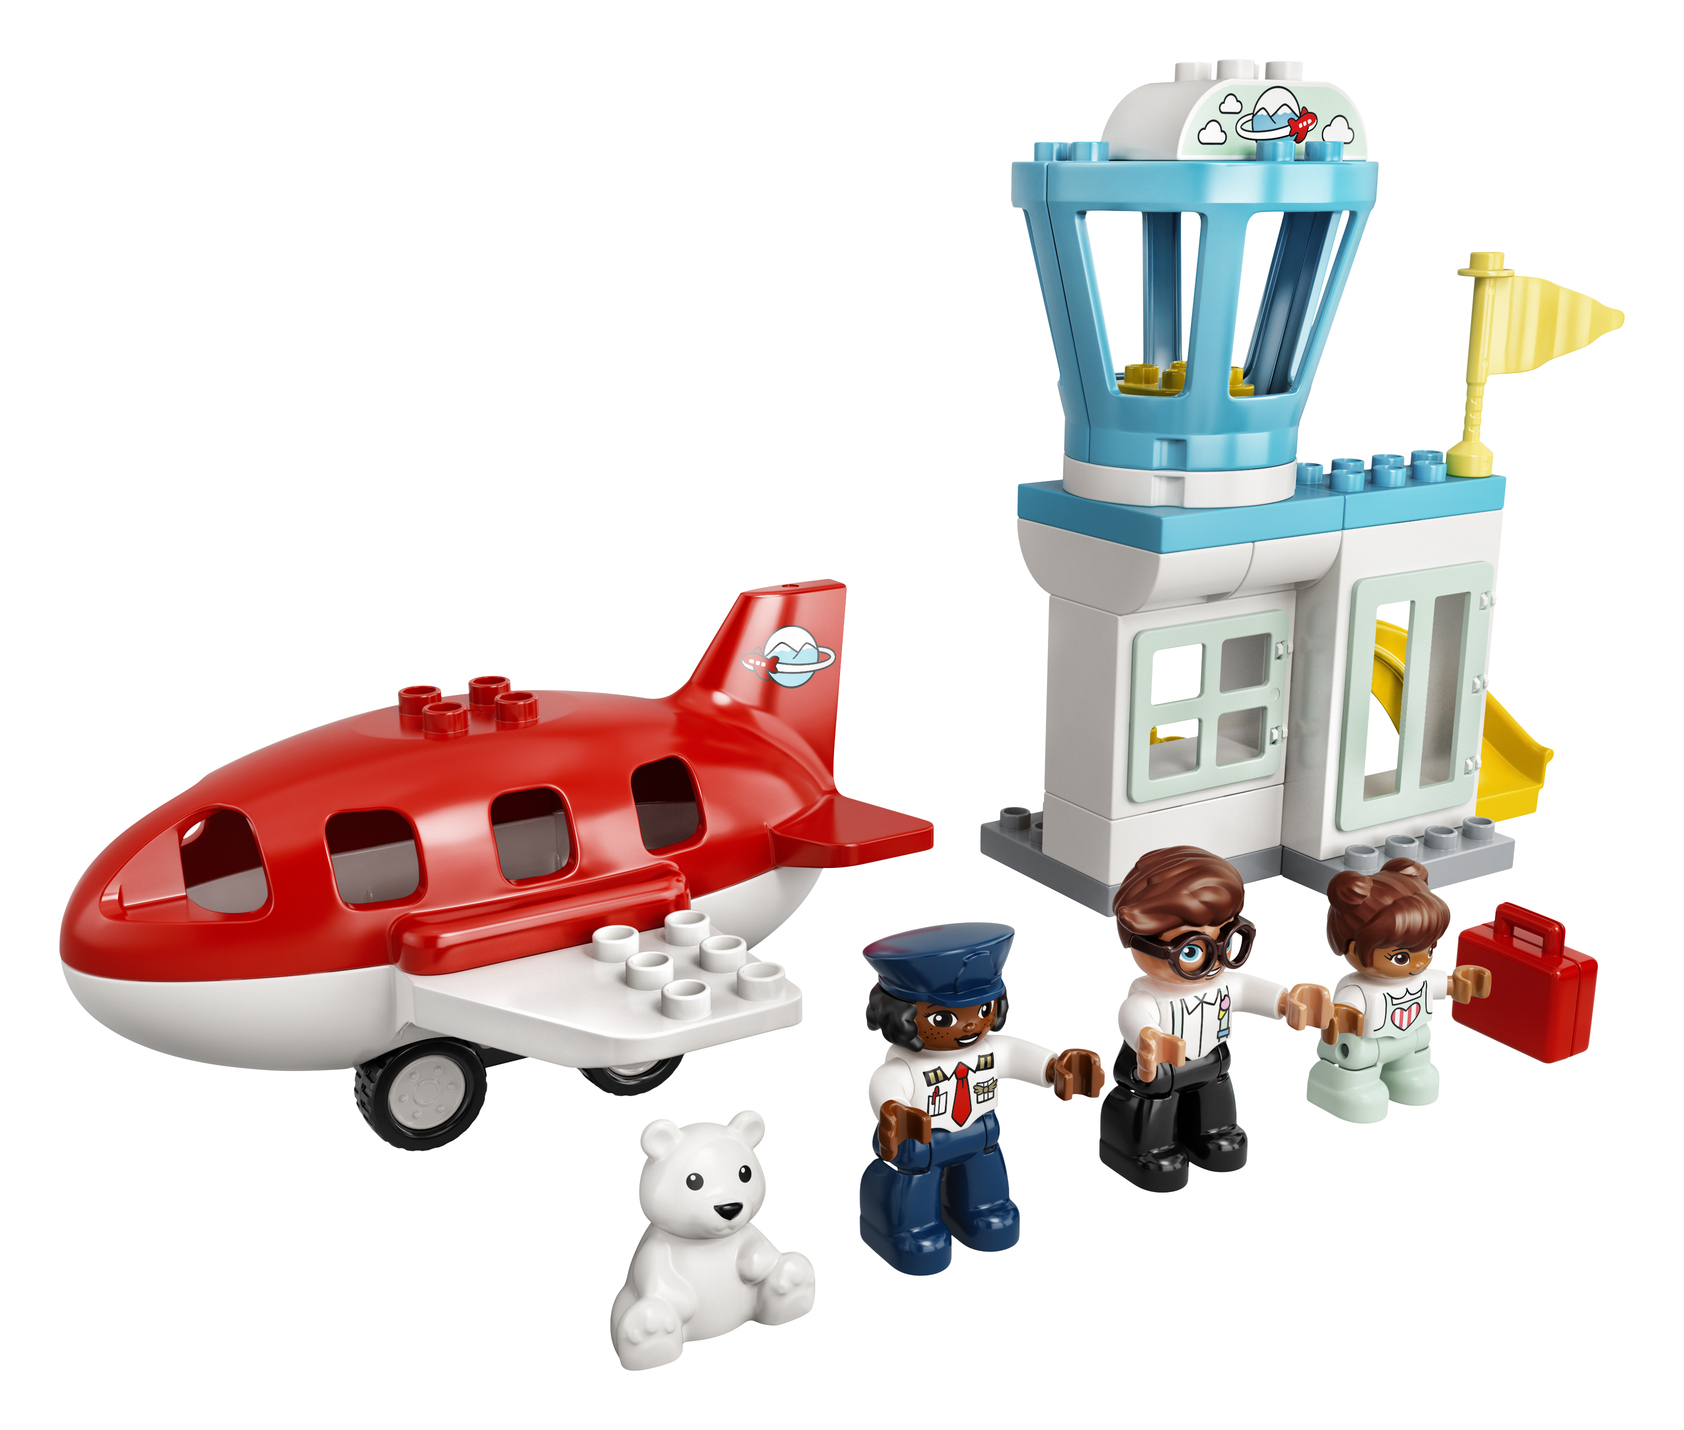 LEGO DUPLO Конструктор "Самолет и аэропорт" 10961 - фото 4